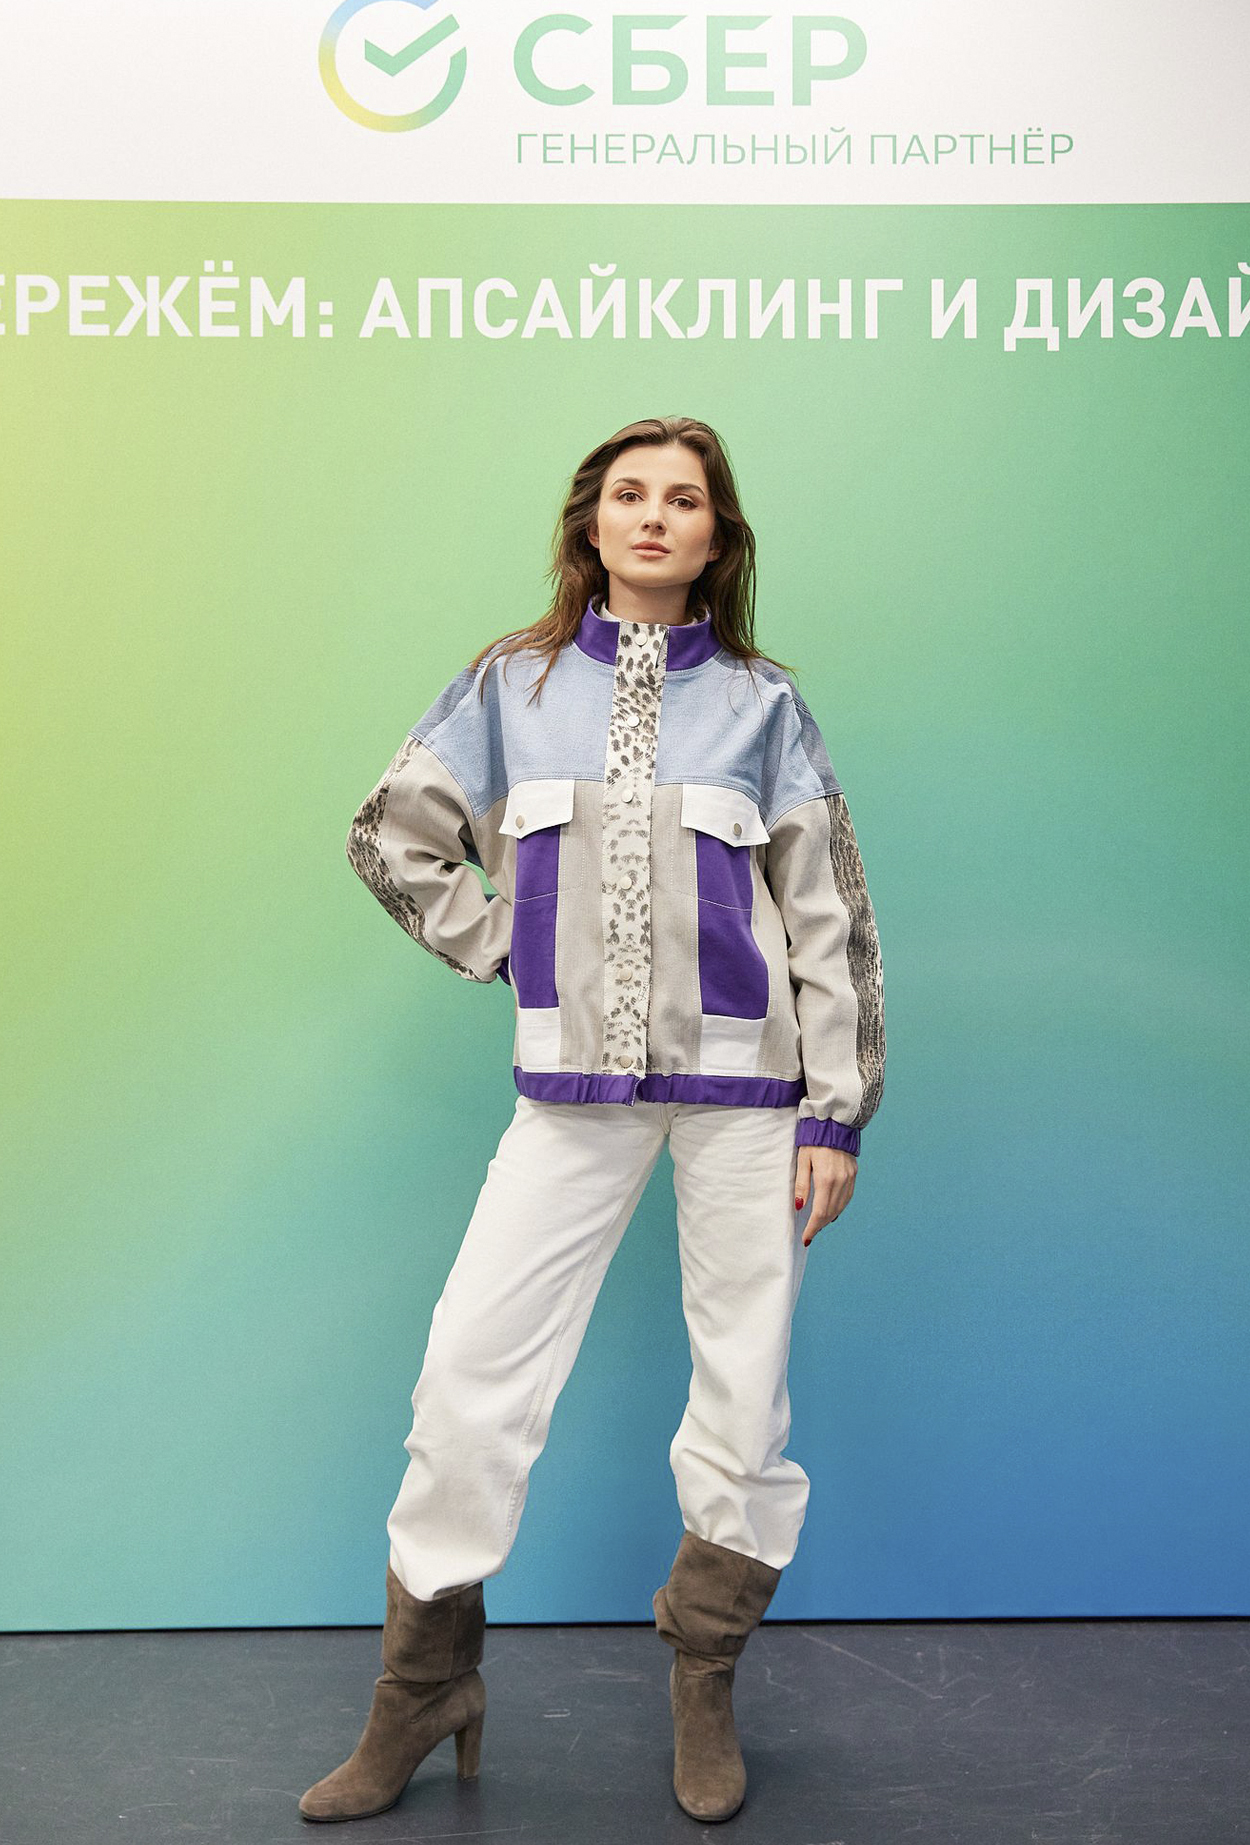 Анастасия Рогова: интервью с дизайнерами ТОП-10 конкурса «СБЕРЕЖЕМ: апсайклинг и дизайн 2022» 1